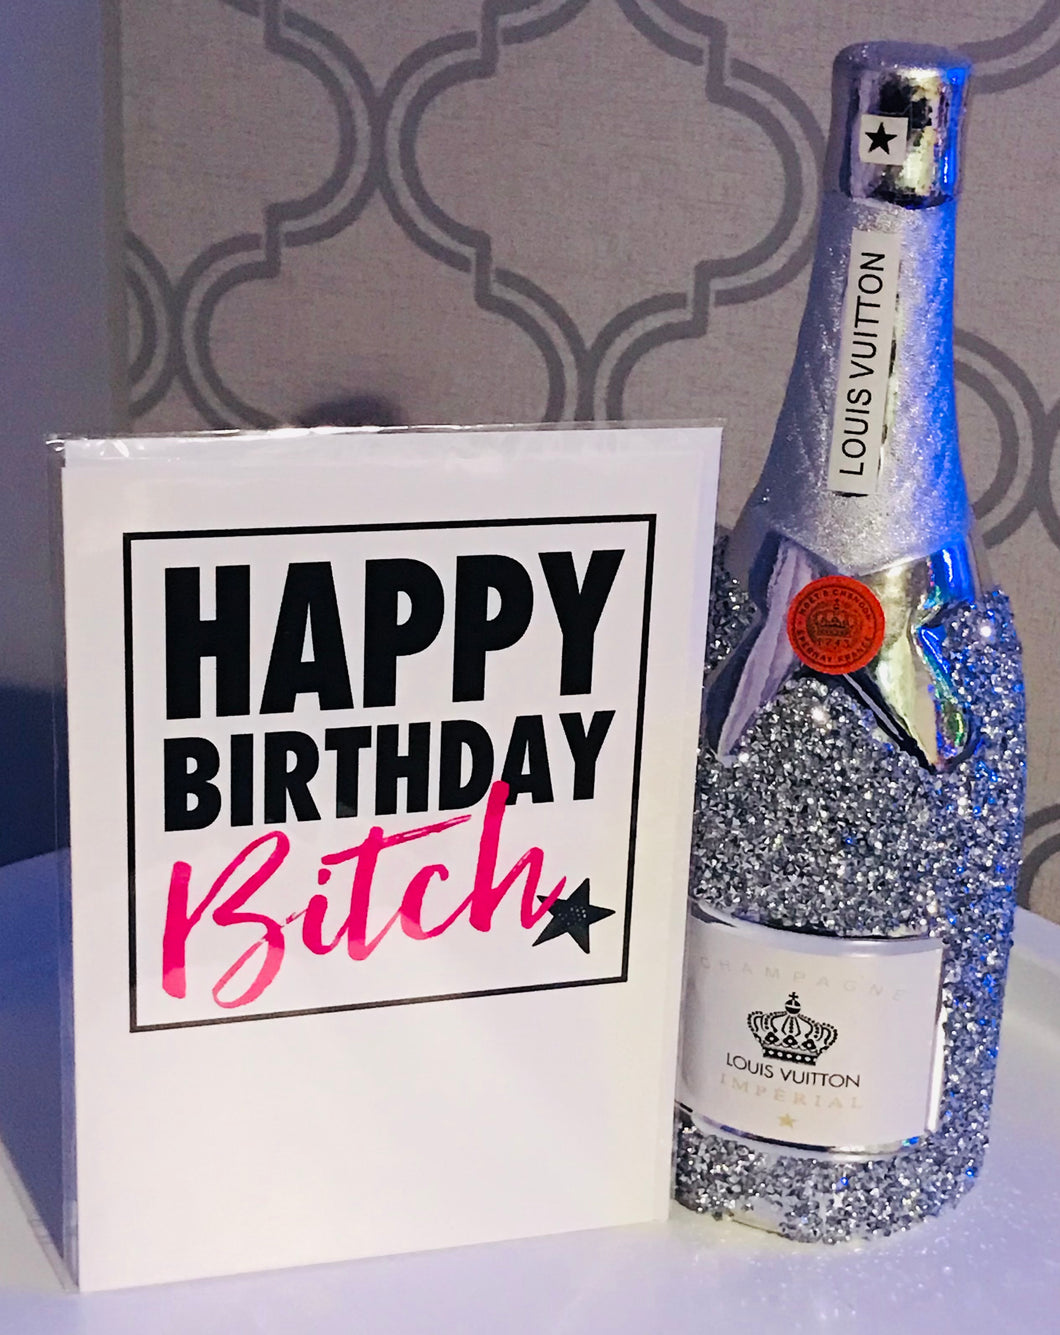 Happy Birthday Bitch card – Queen Kandy Bath